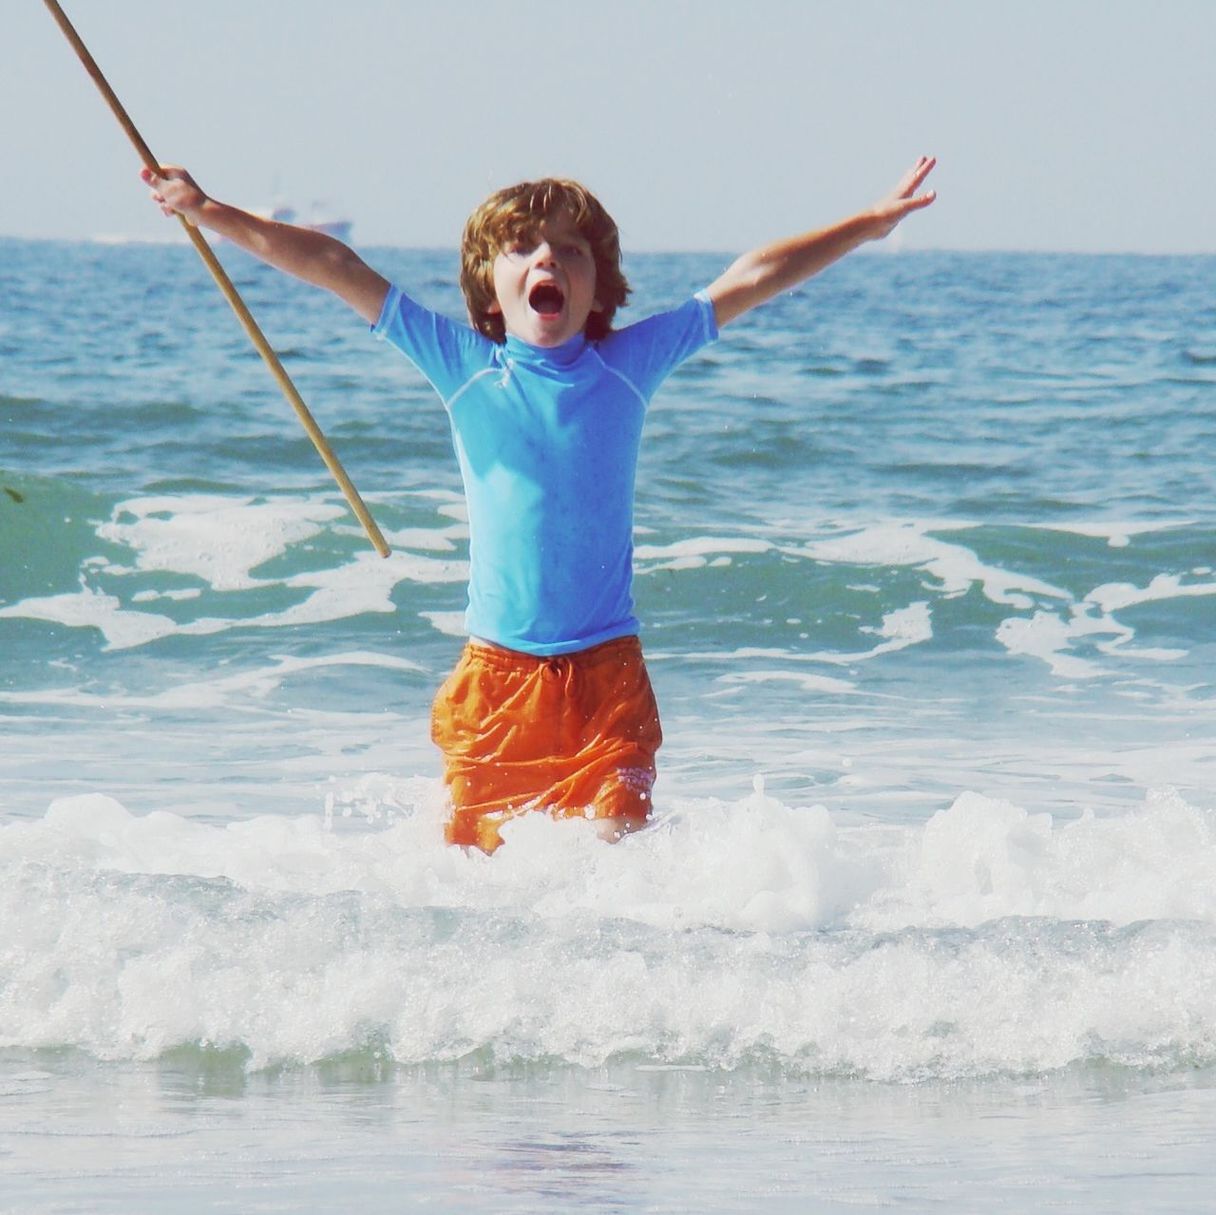 BOY JUMPING ON BEACH AGAINST SKY